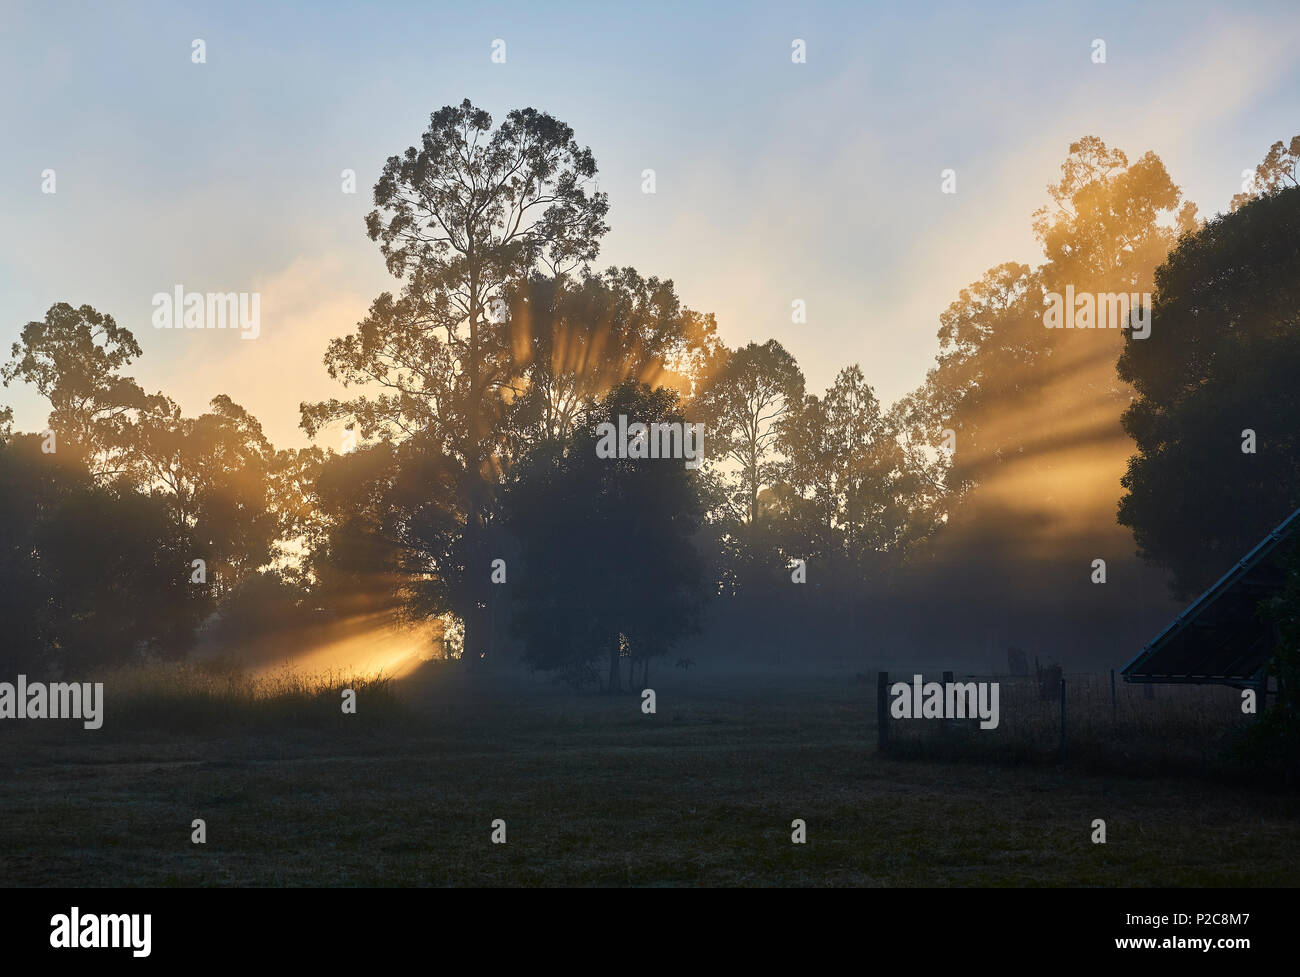 Am frühen Morgen Szene in einem Wald mit der goldenen Sonne und Nebel erzeugen Silhouette der Bäume Stockfoto